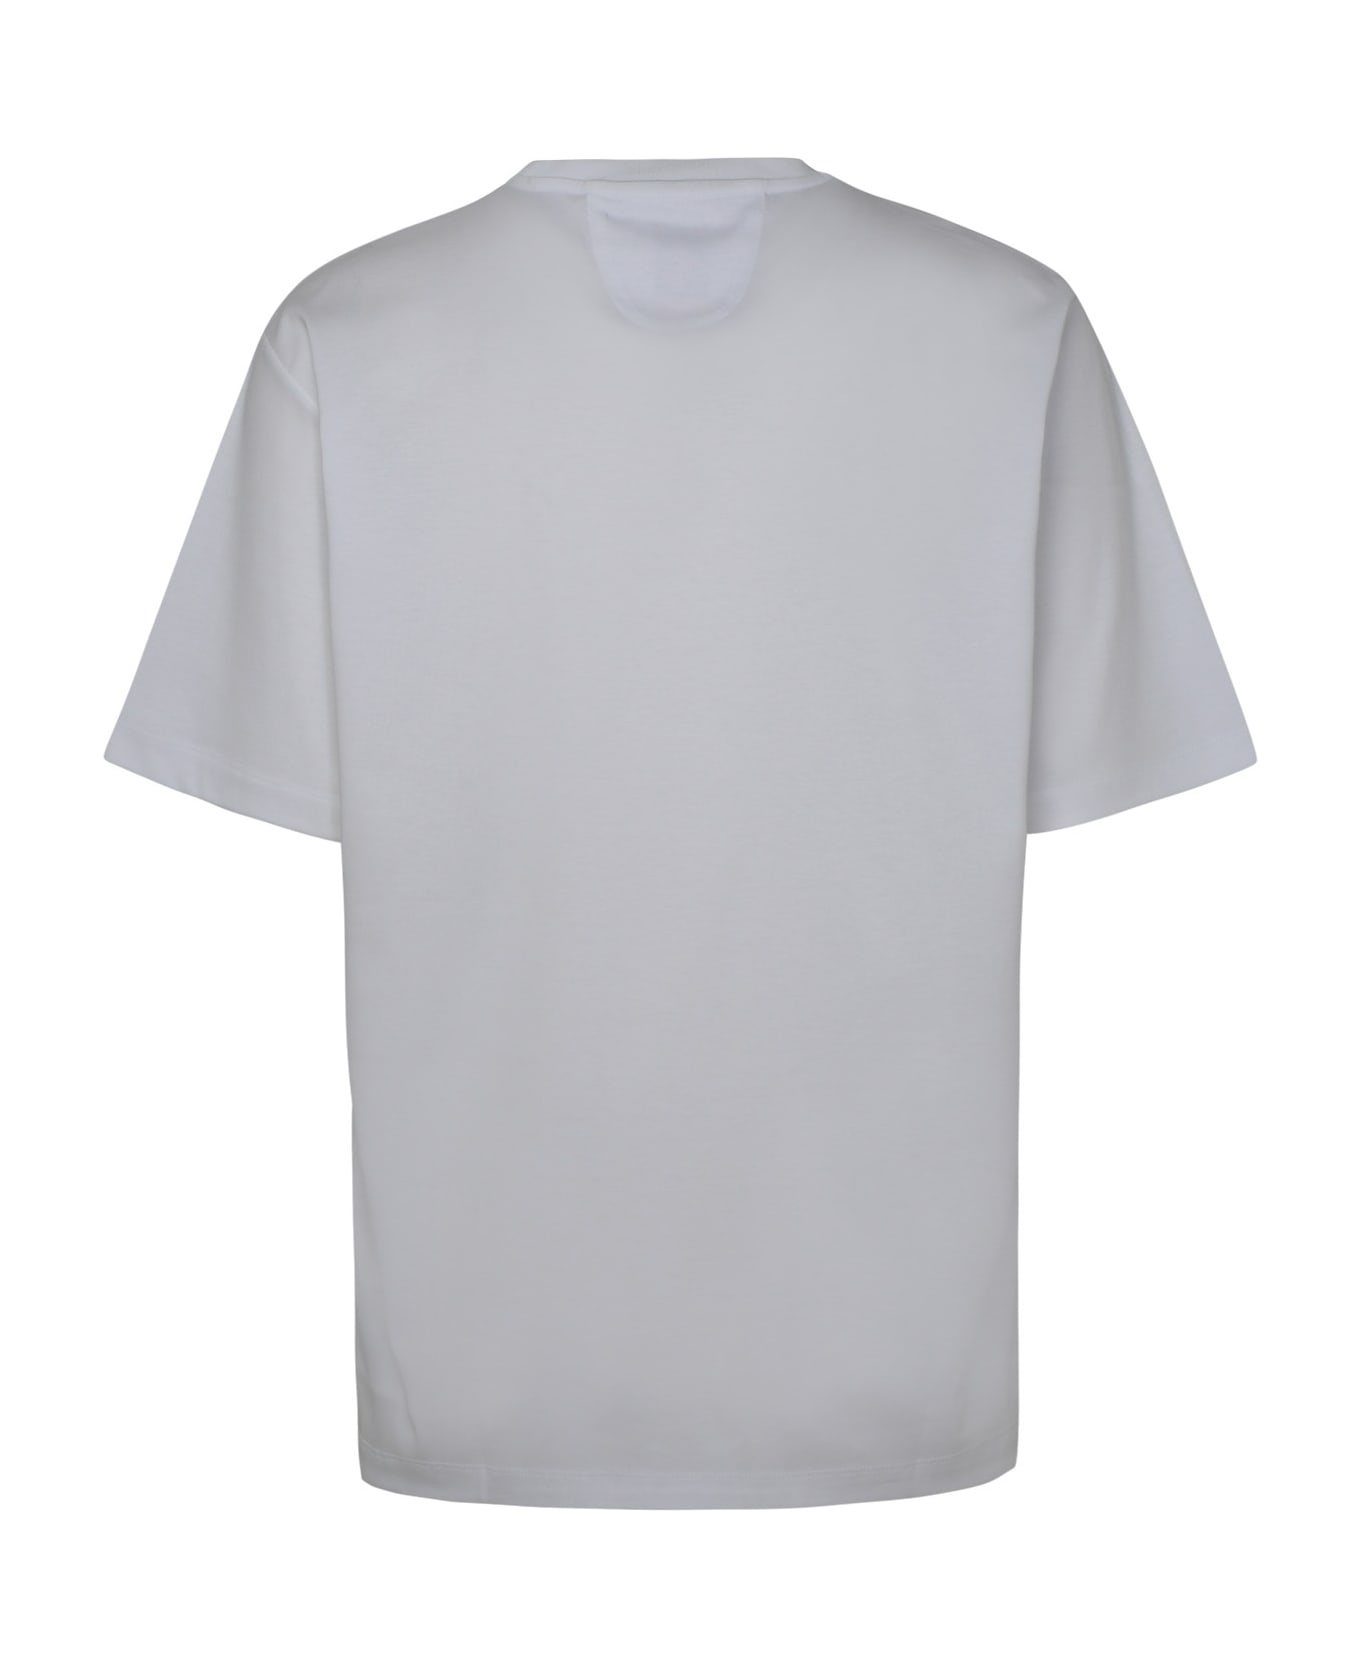 Ferrari White Cotton T-shirt - White